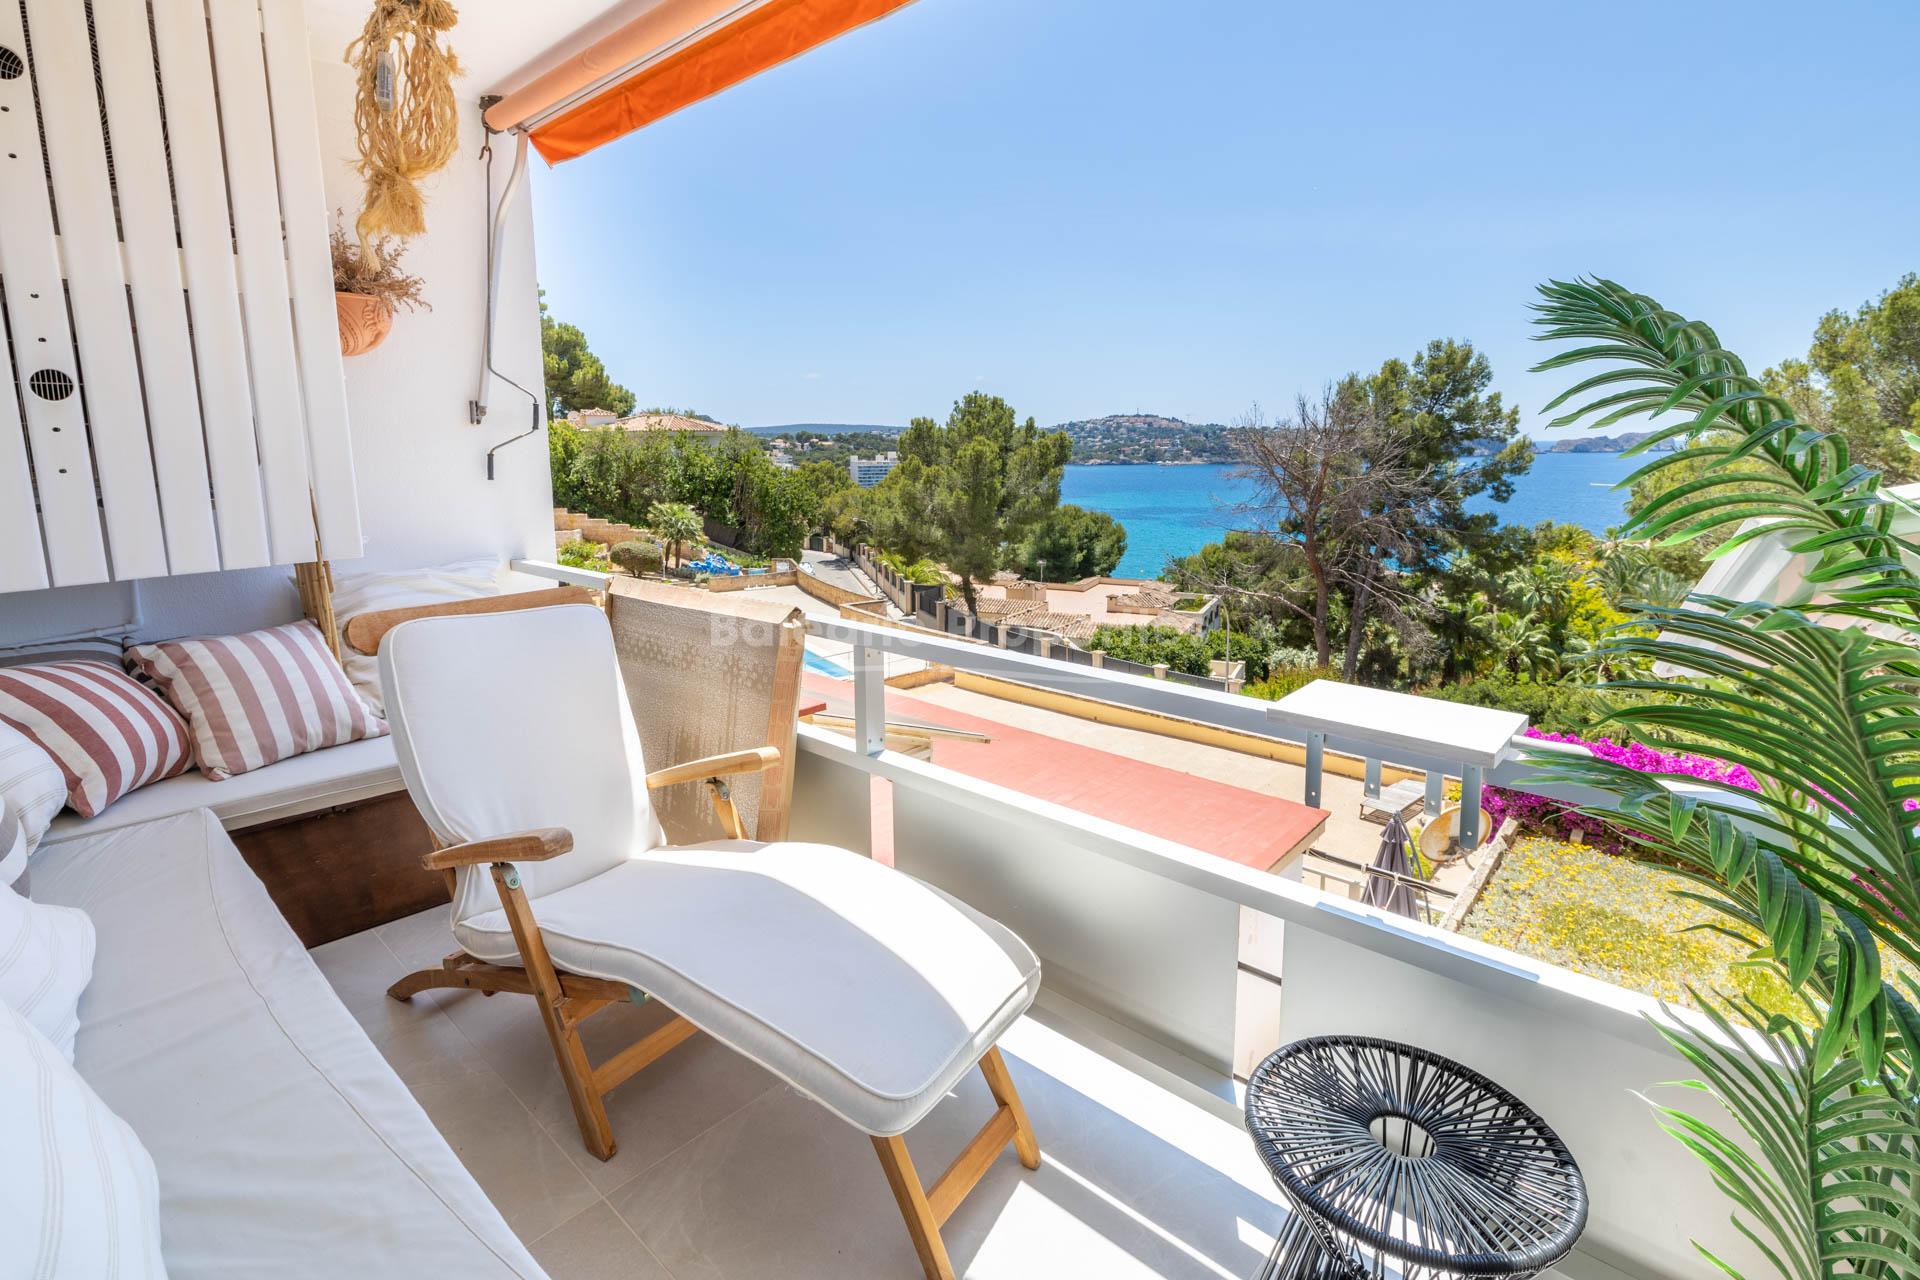 Renovated apartment for sale overlooking the sea in Costa de la Calma, Mallorca